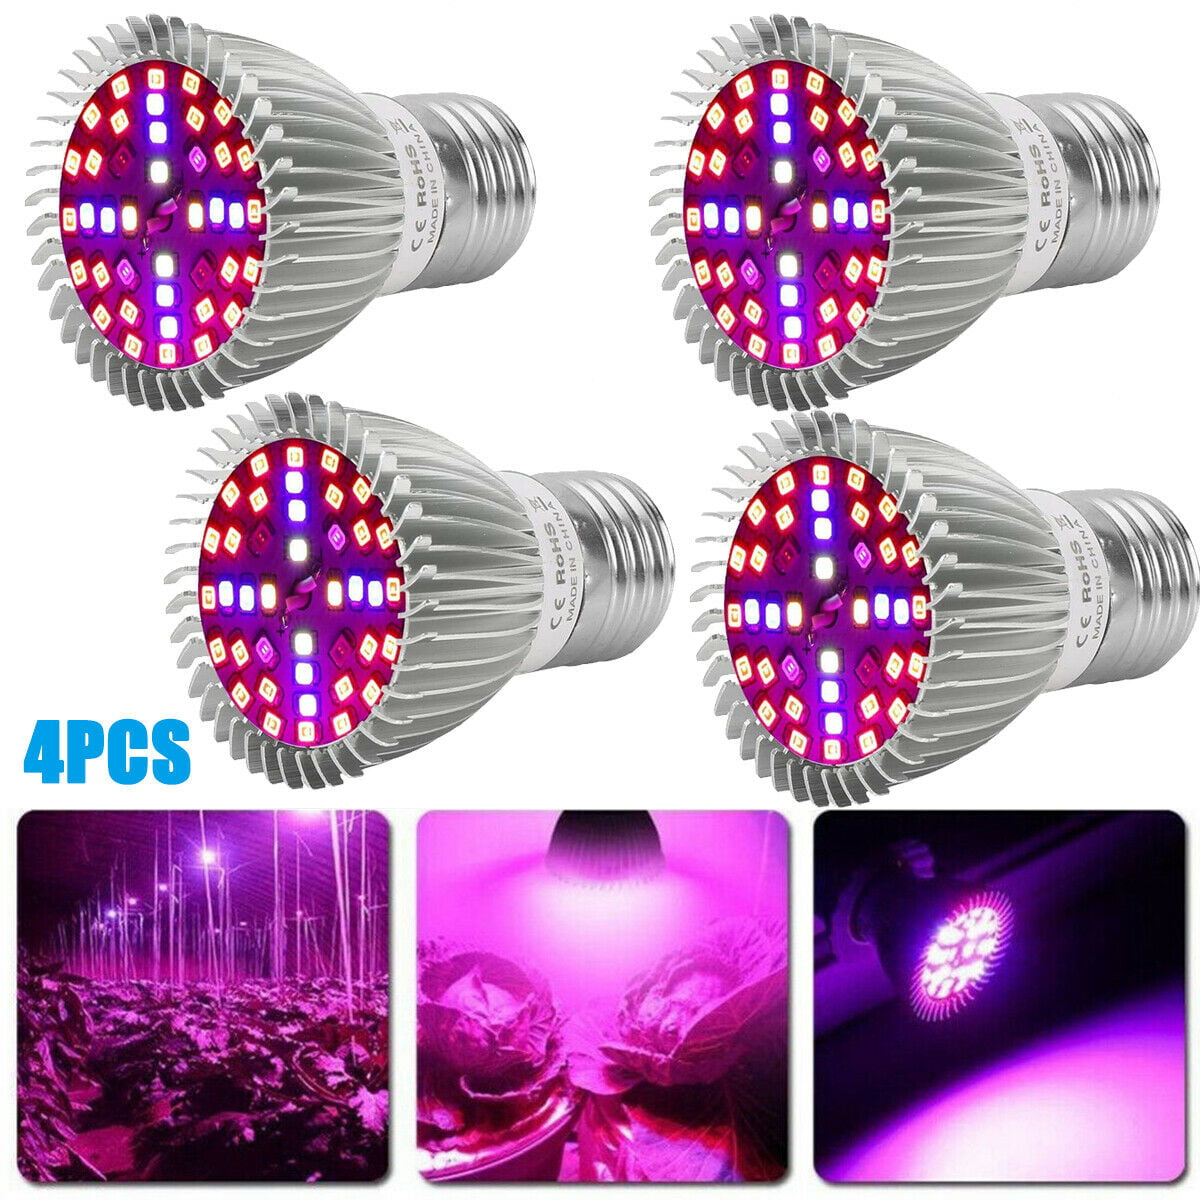 4Pcs 28W LED Grow Light E27 Lamp Bulb for Garden Plant Hydroponic Full Spectrum 